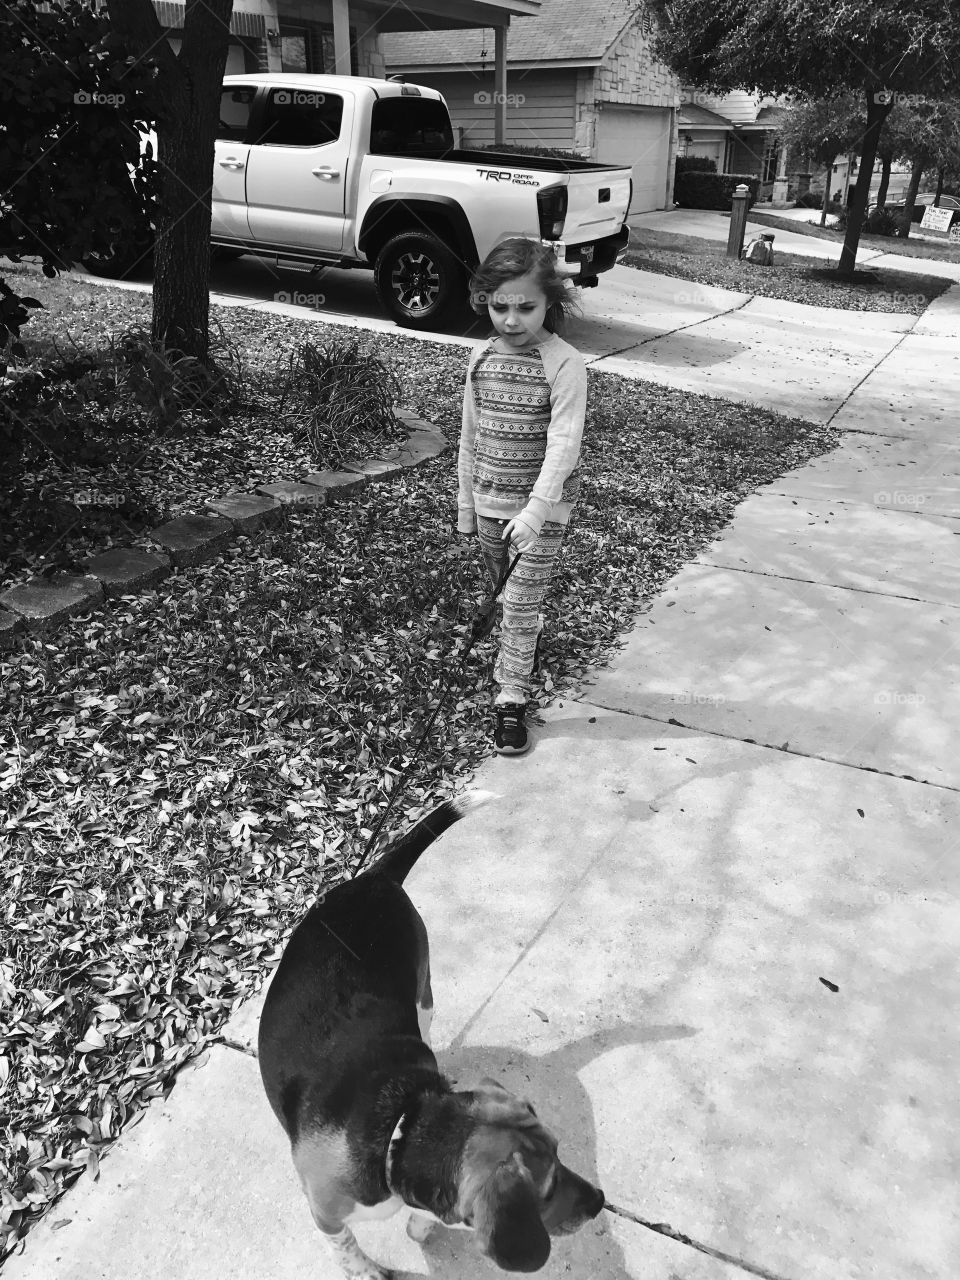 Neighborhood walks with the pup